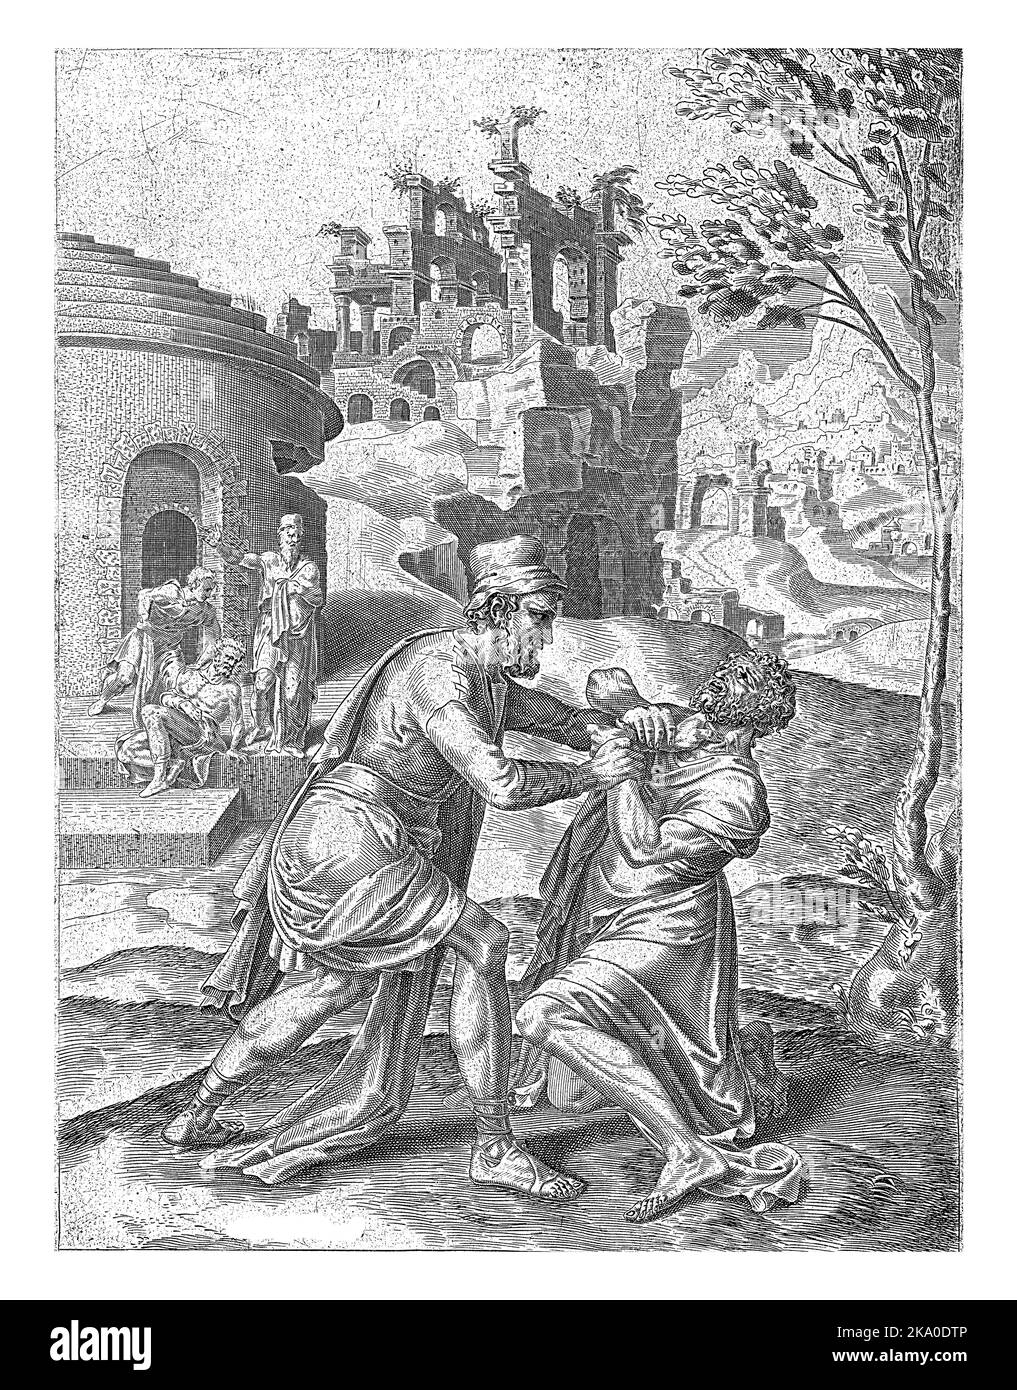 Fight between the ungrateful servant and a debtor, Dirck Volckertsz. Coornhert, after Maarten van Heemskerck, 1554 - 1612 The ungrateful servant attac Stock Photo